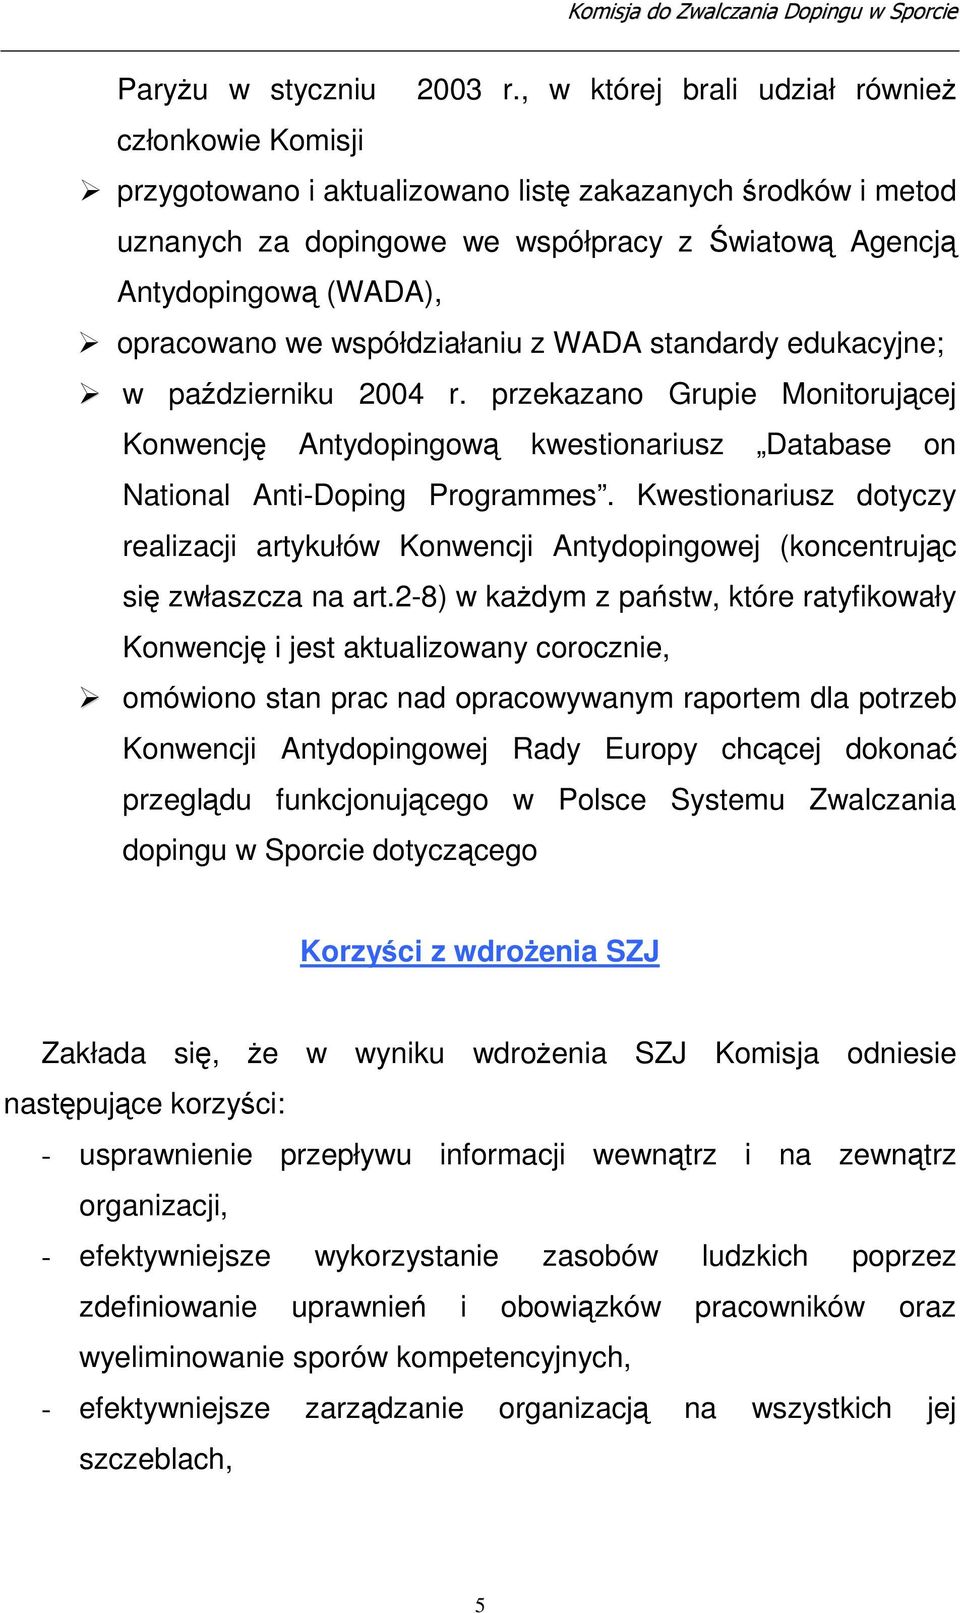 współdziałaniu z WADA standardy edukacyjne; w padzierniku 2004 r. przekazano Grupie Monitorujcej Konwencj Antydopingow kwestionariusz Database on National Anti-Doping Programmes.